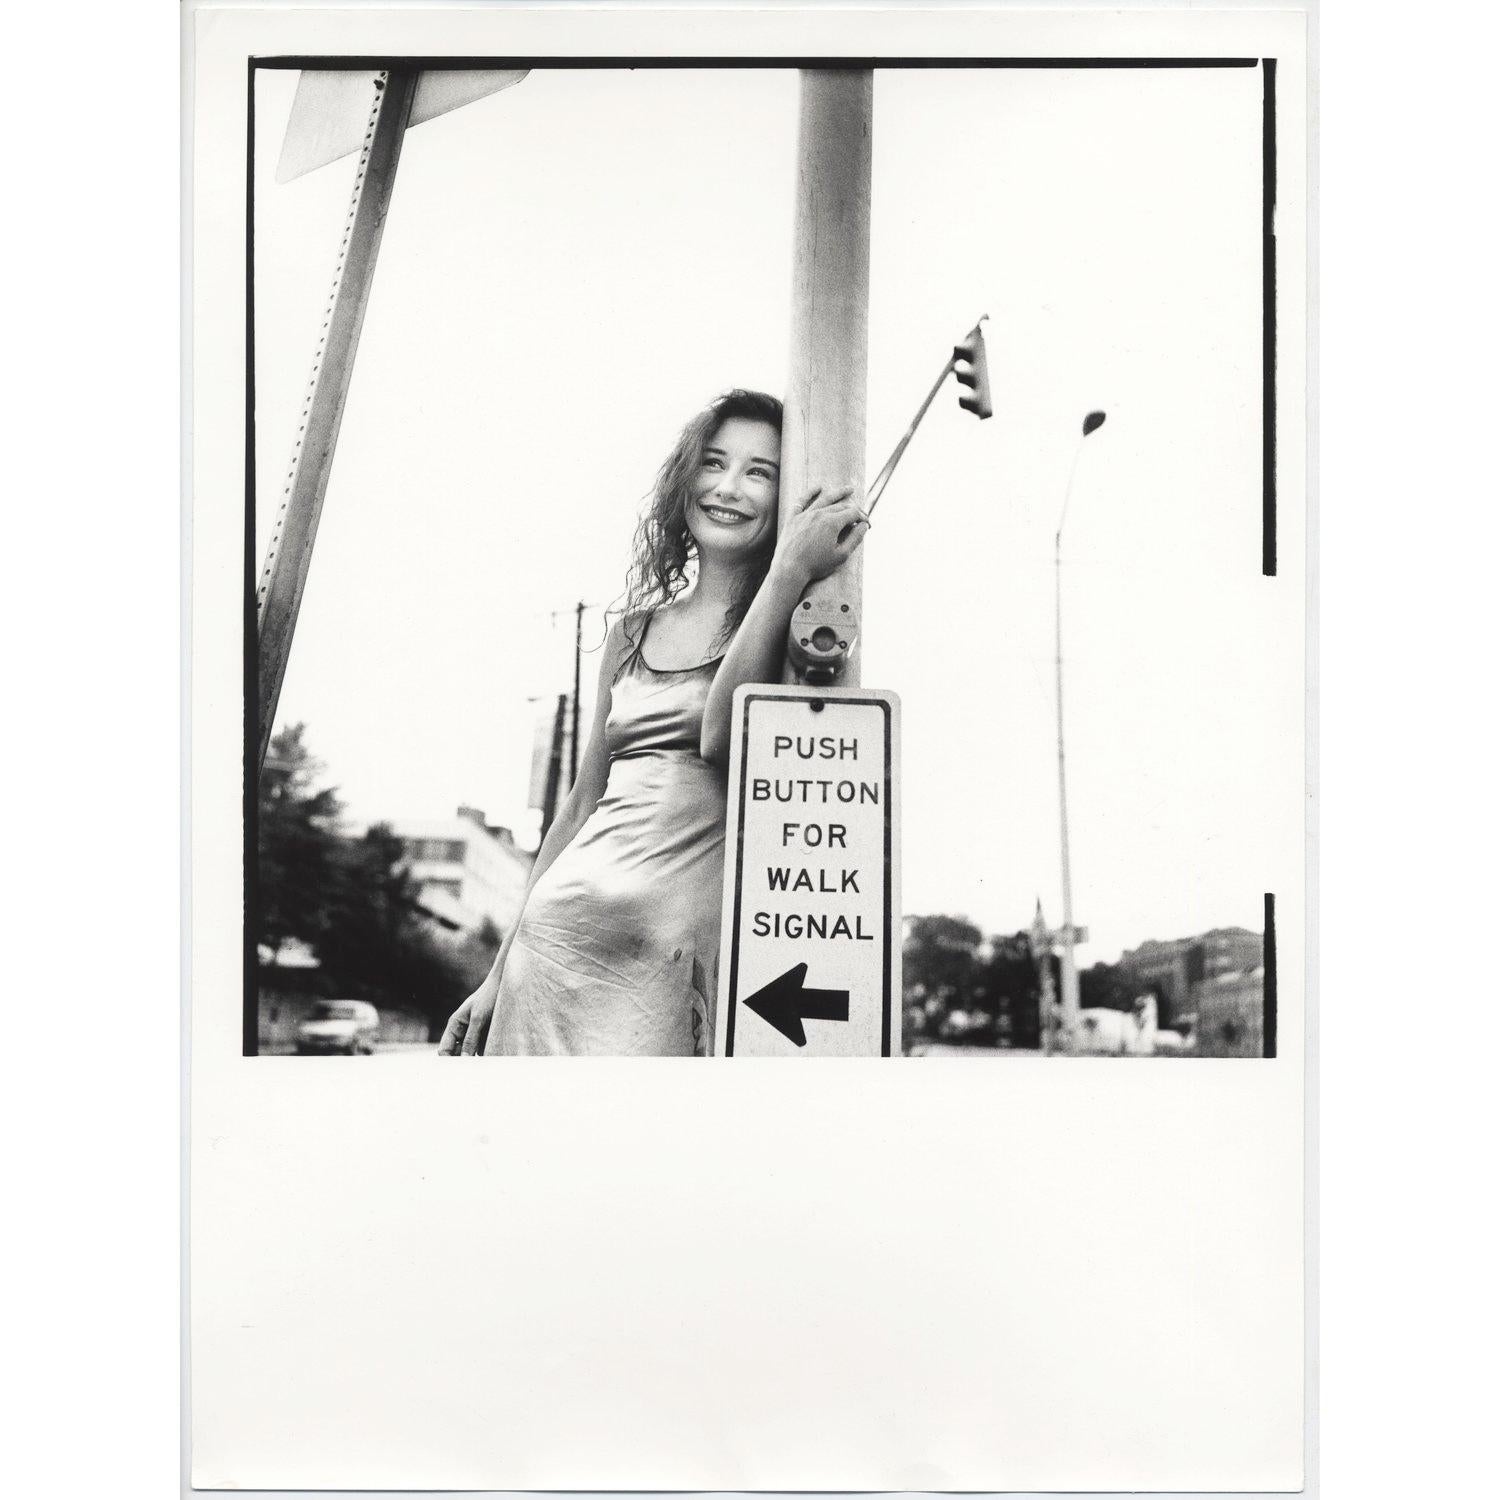 Original handgedruckter 12x16"-Dunkelkammerdruck des Fotografen Jake Chessum von Tori Amos. Gedruckt von Jake in den 90er Jahren, zur Zeit des Fotoshootings.

Jake erinnert sich an die Session: "Tori Amos spielte 1994 zwei Abende in Atlanta, Ga.,